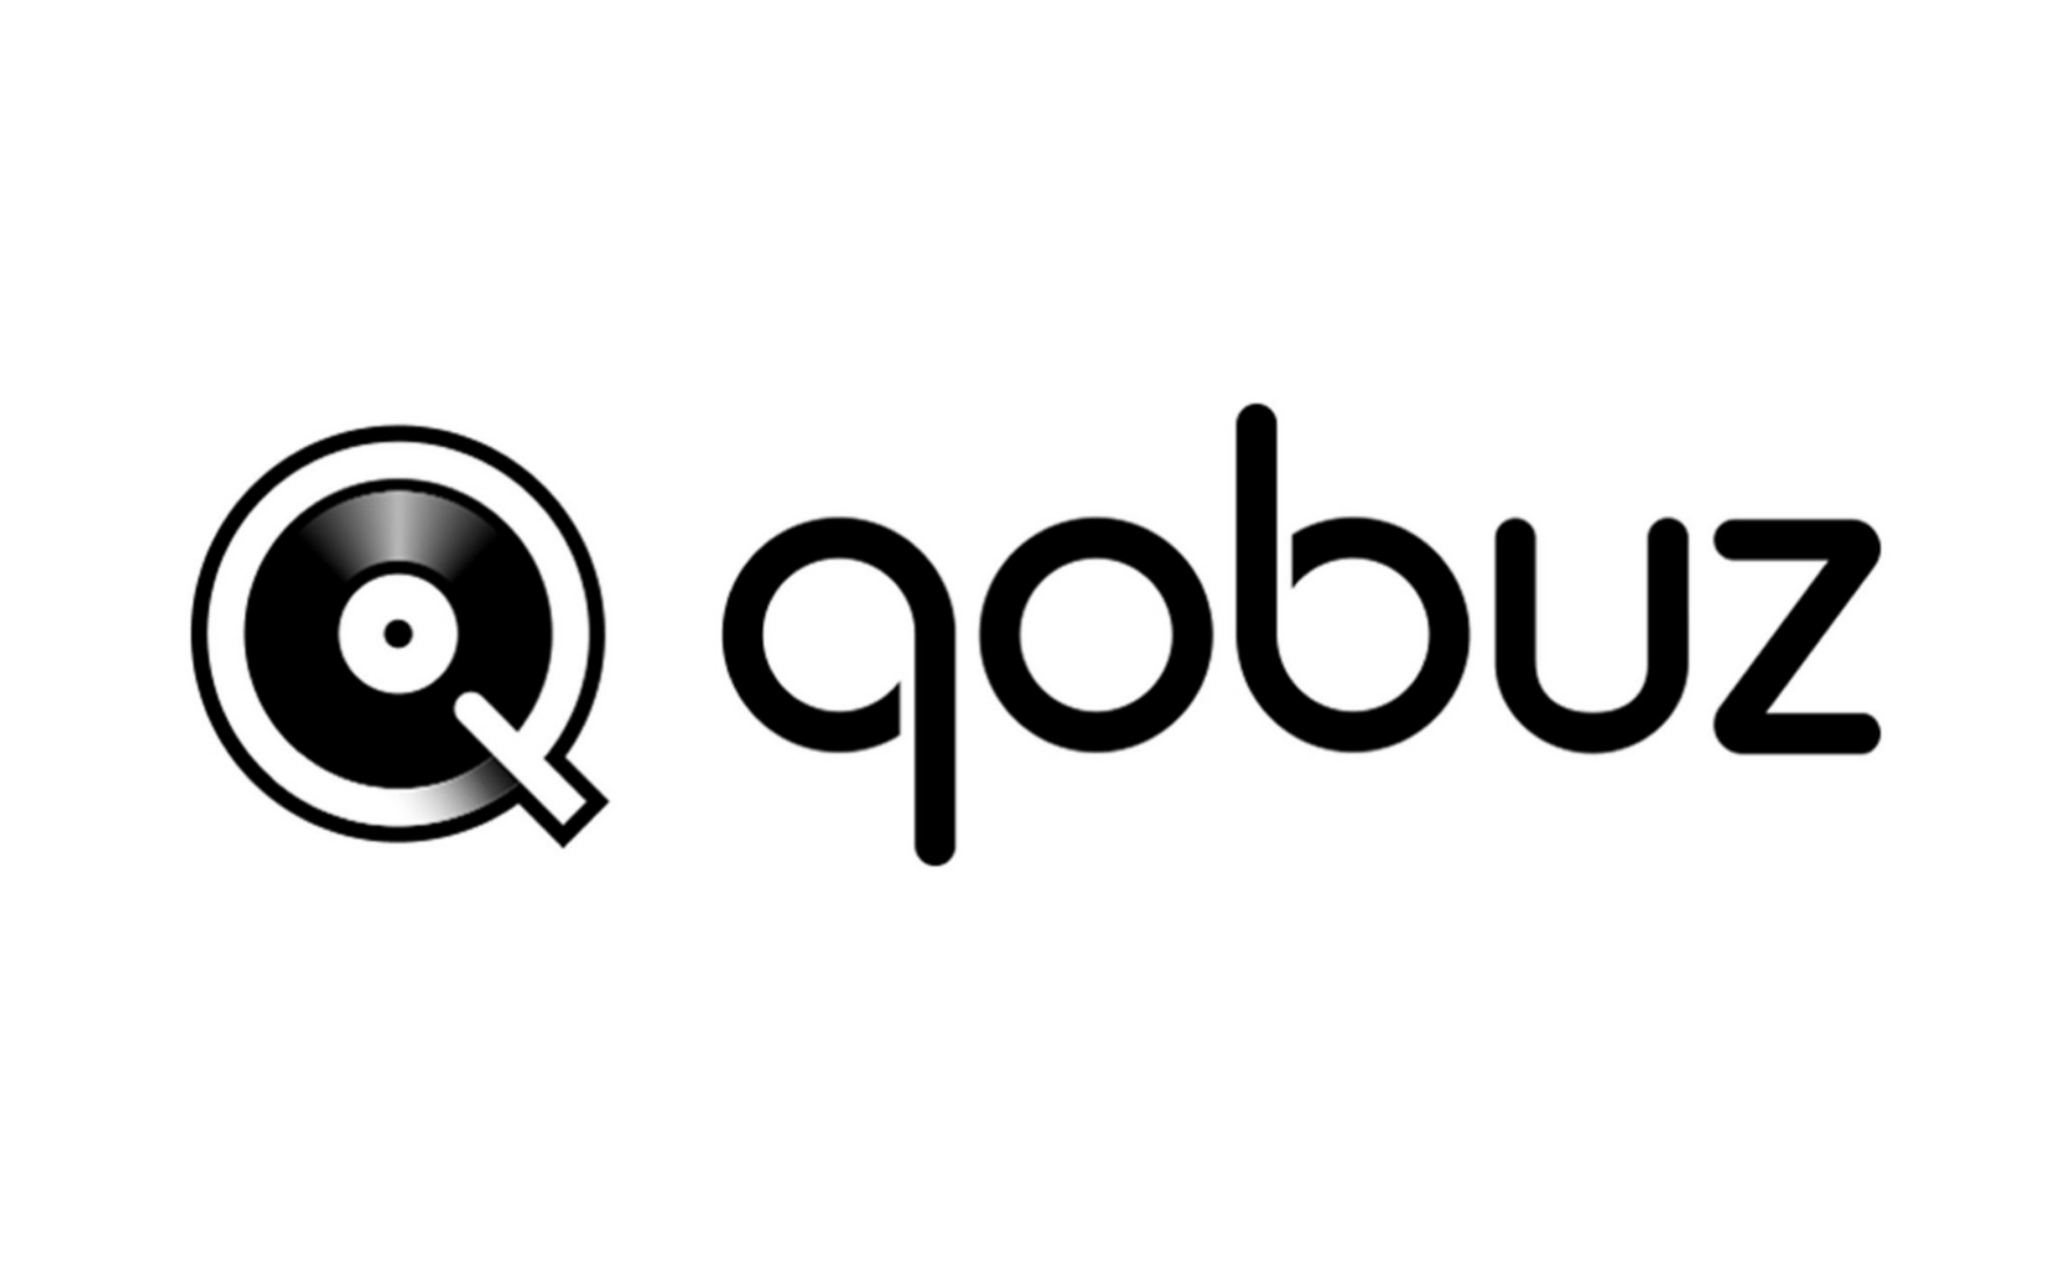 Qobuz chính thức khai tử gói stream nhạc MP3, giảm giá gói Hi-Res chỉ còn 14.99 USD/tháng